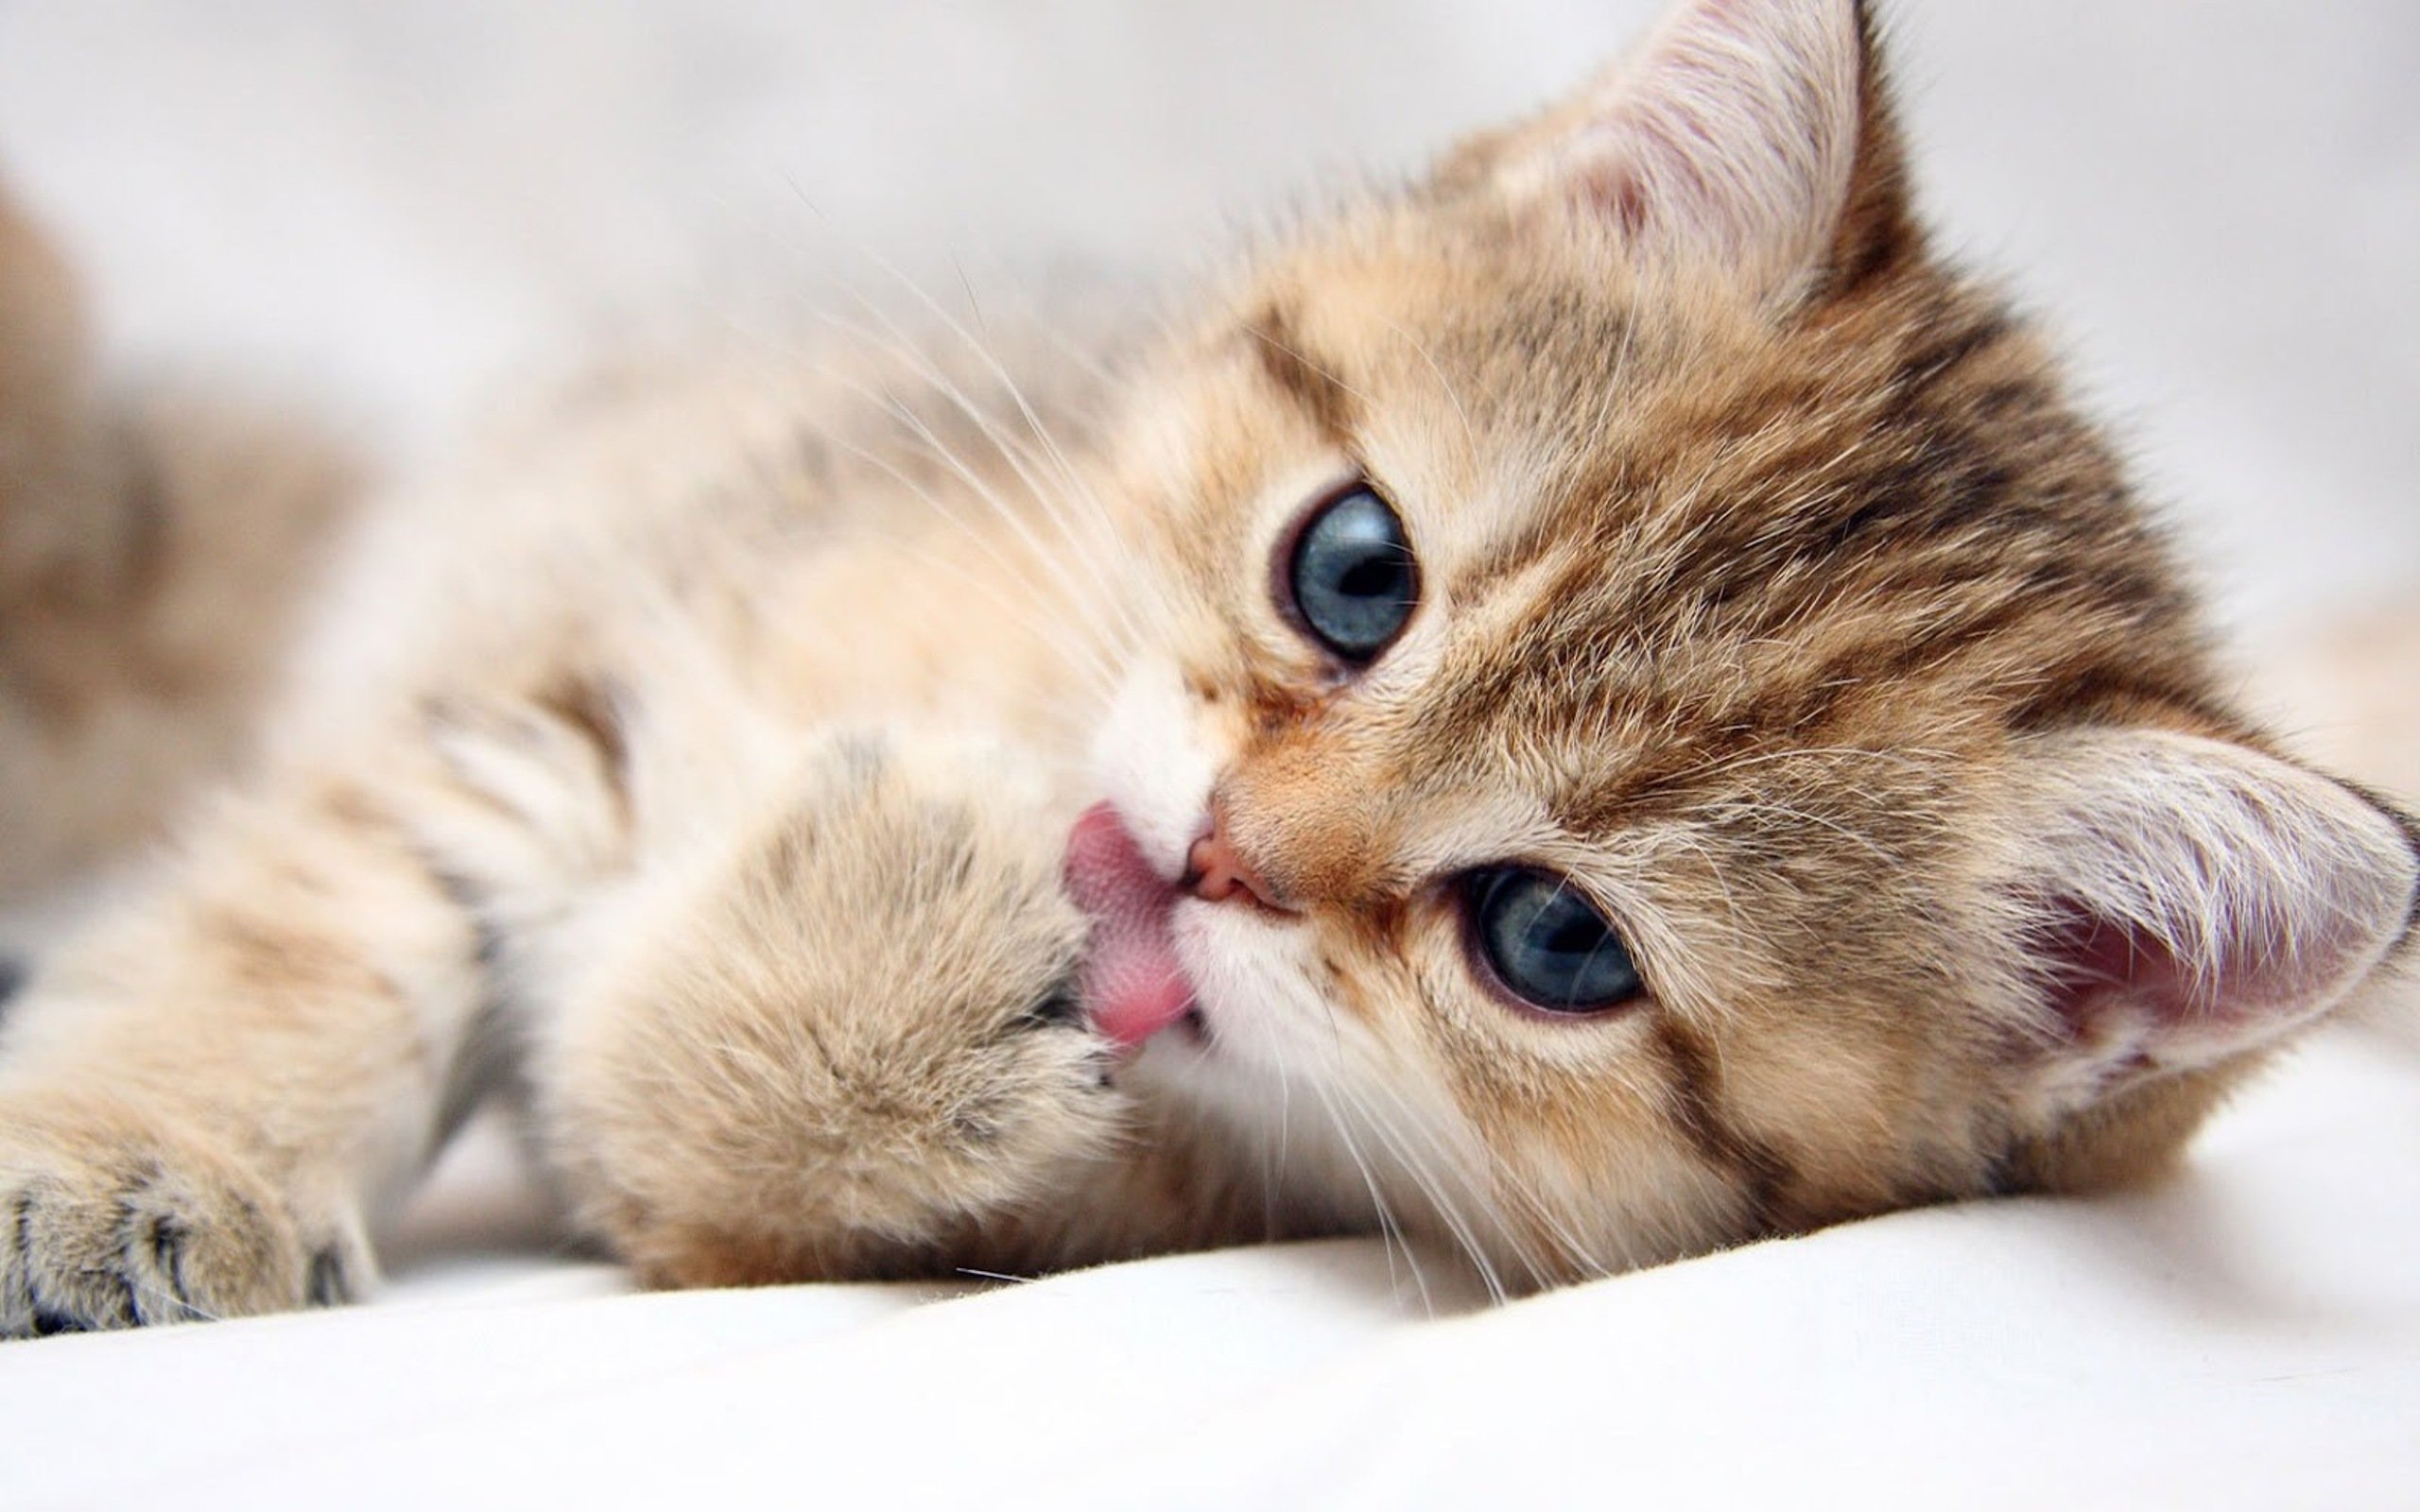 Kittencat